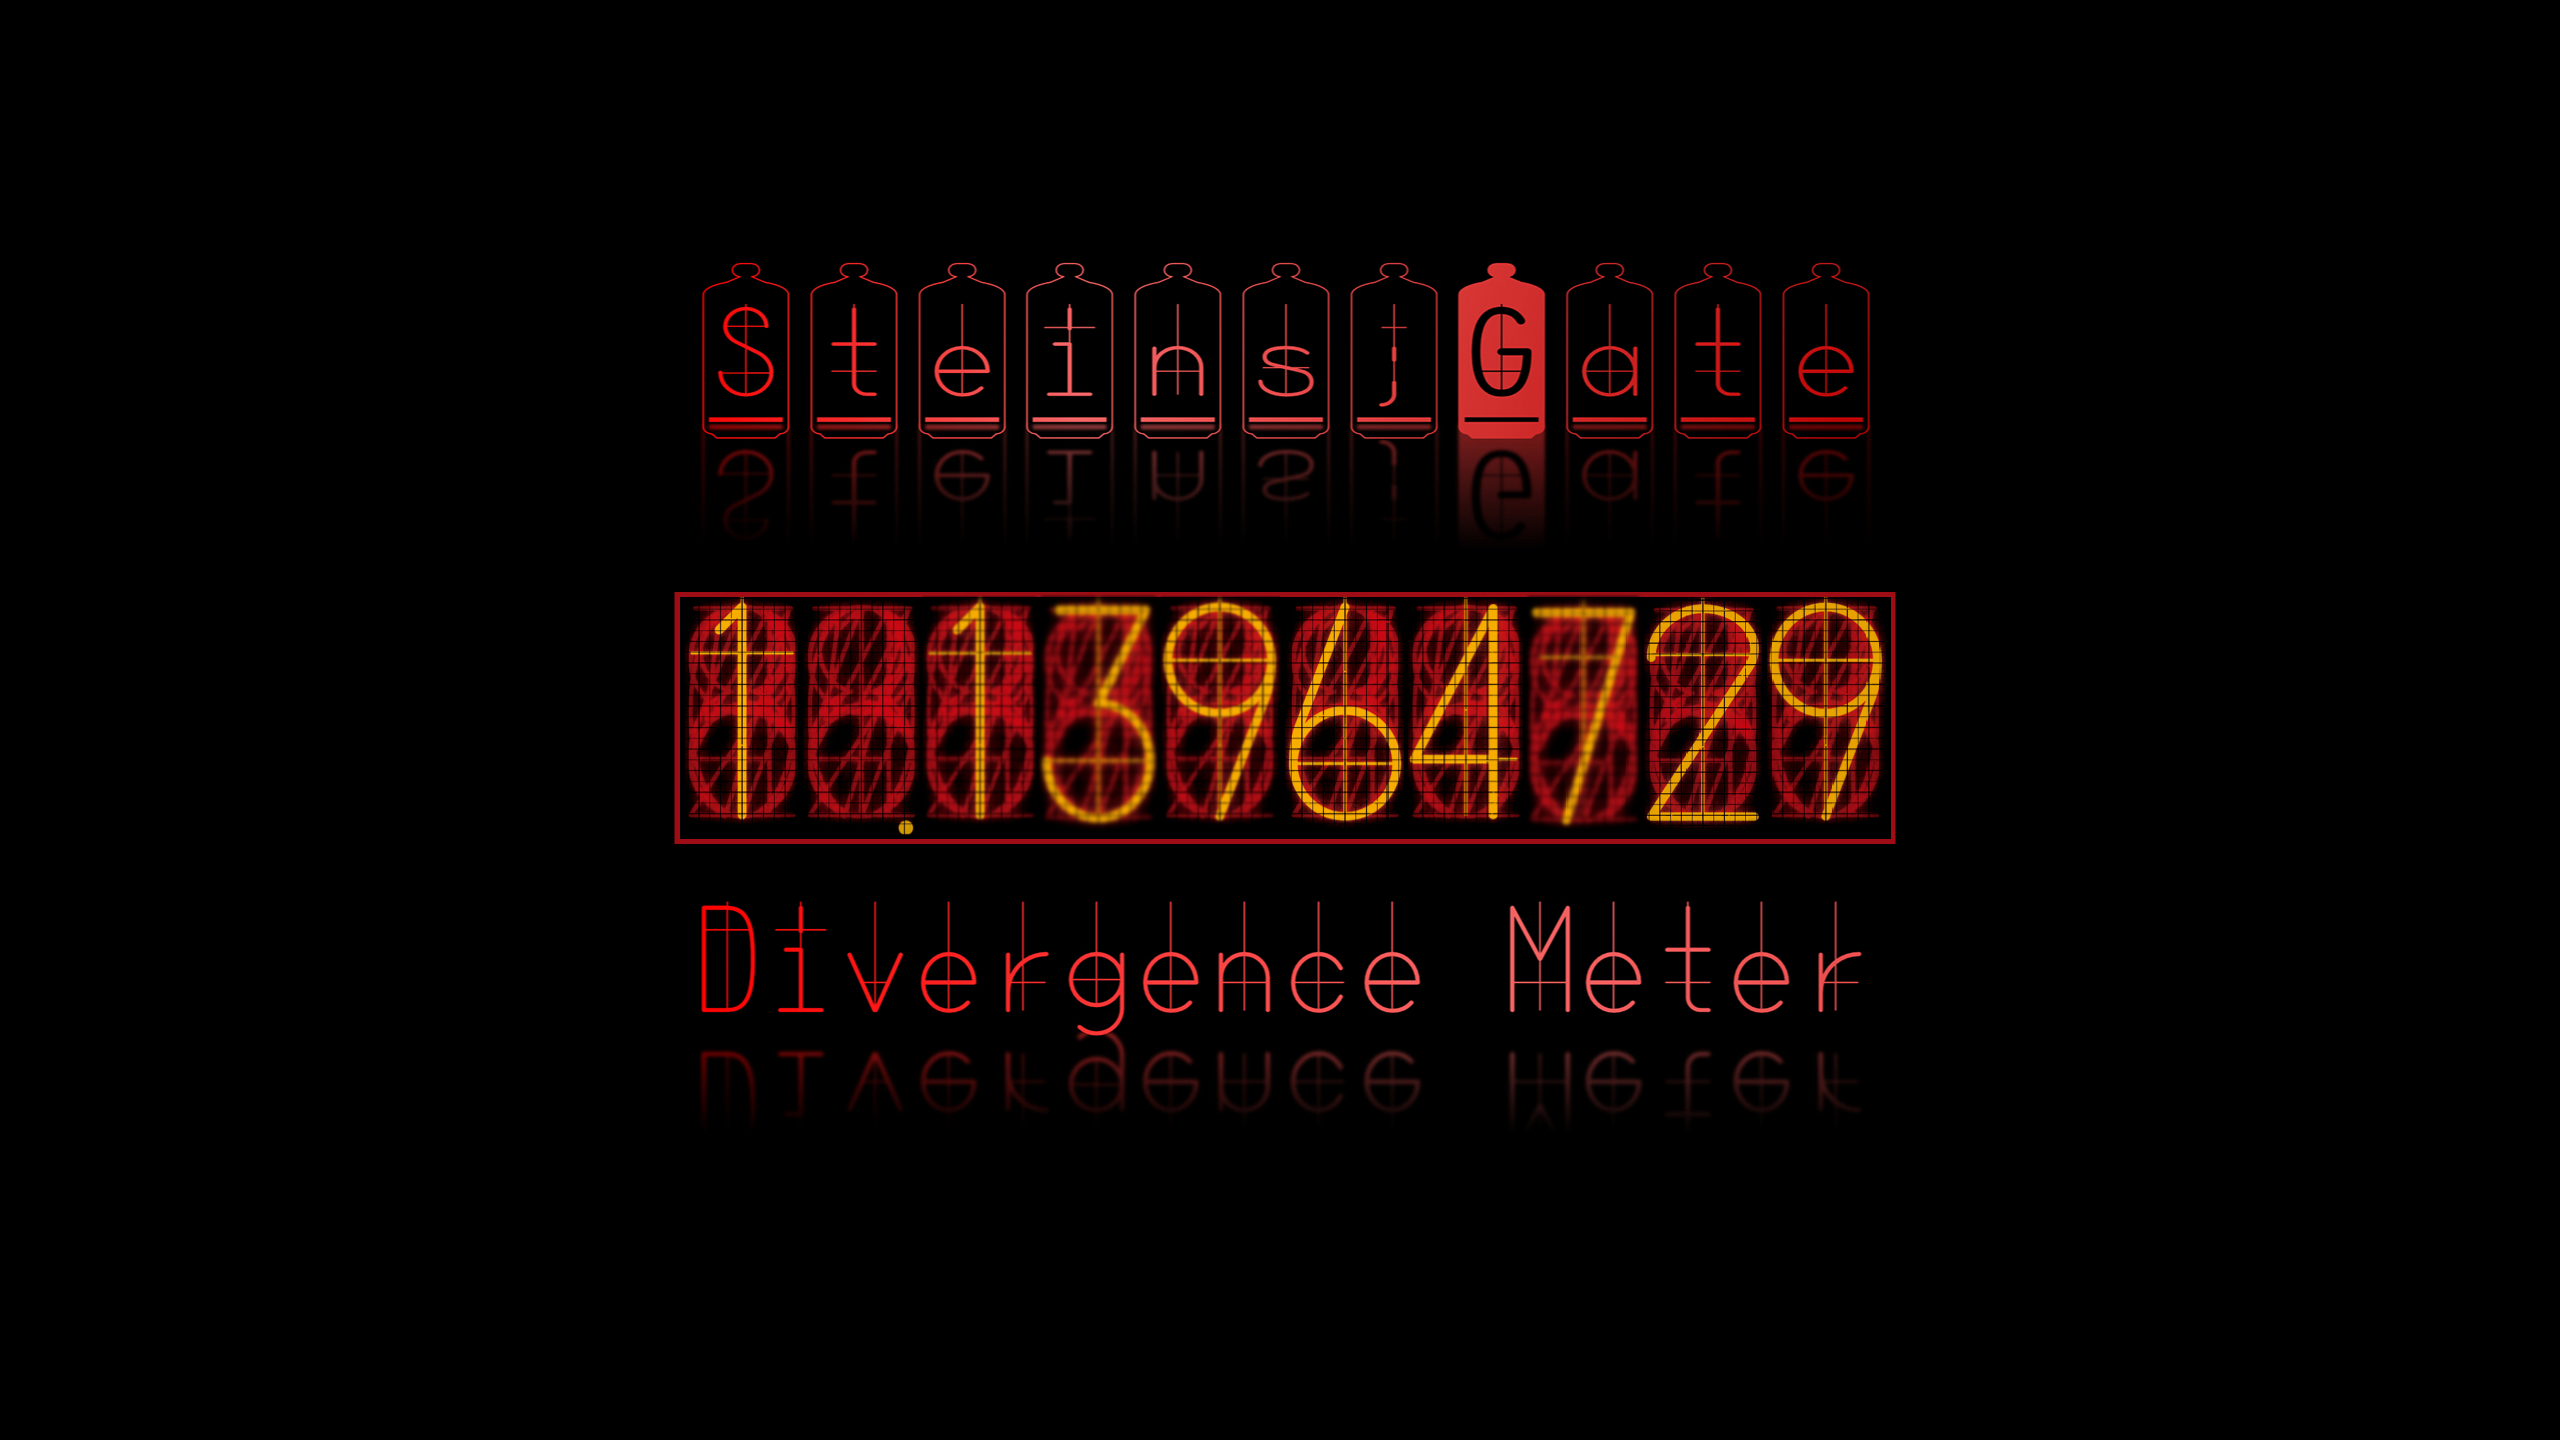 Steam Workshop Steins Gate Divergence Meter